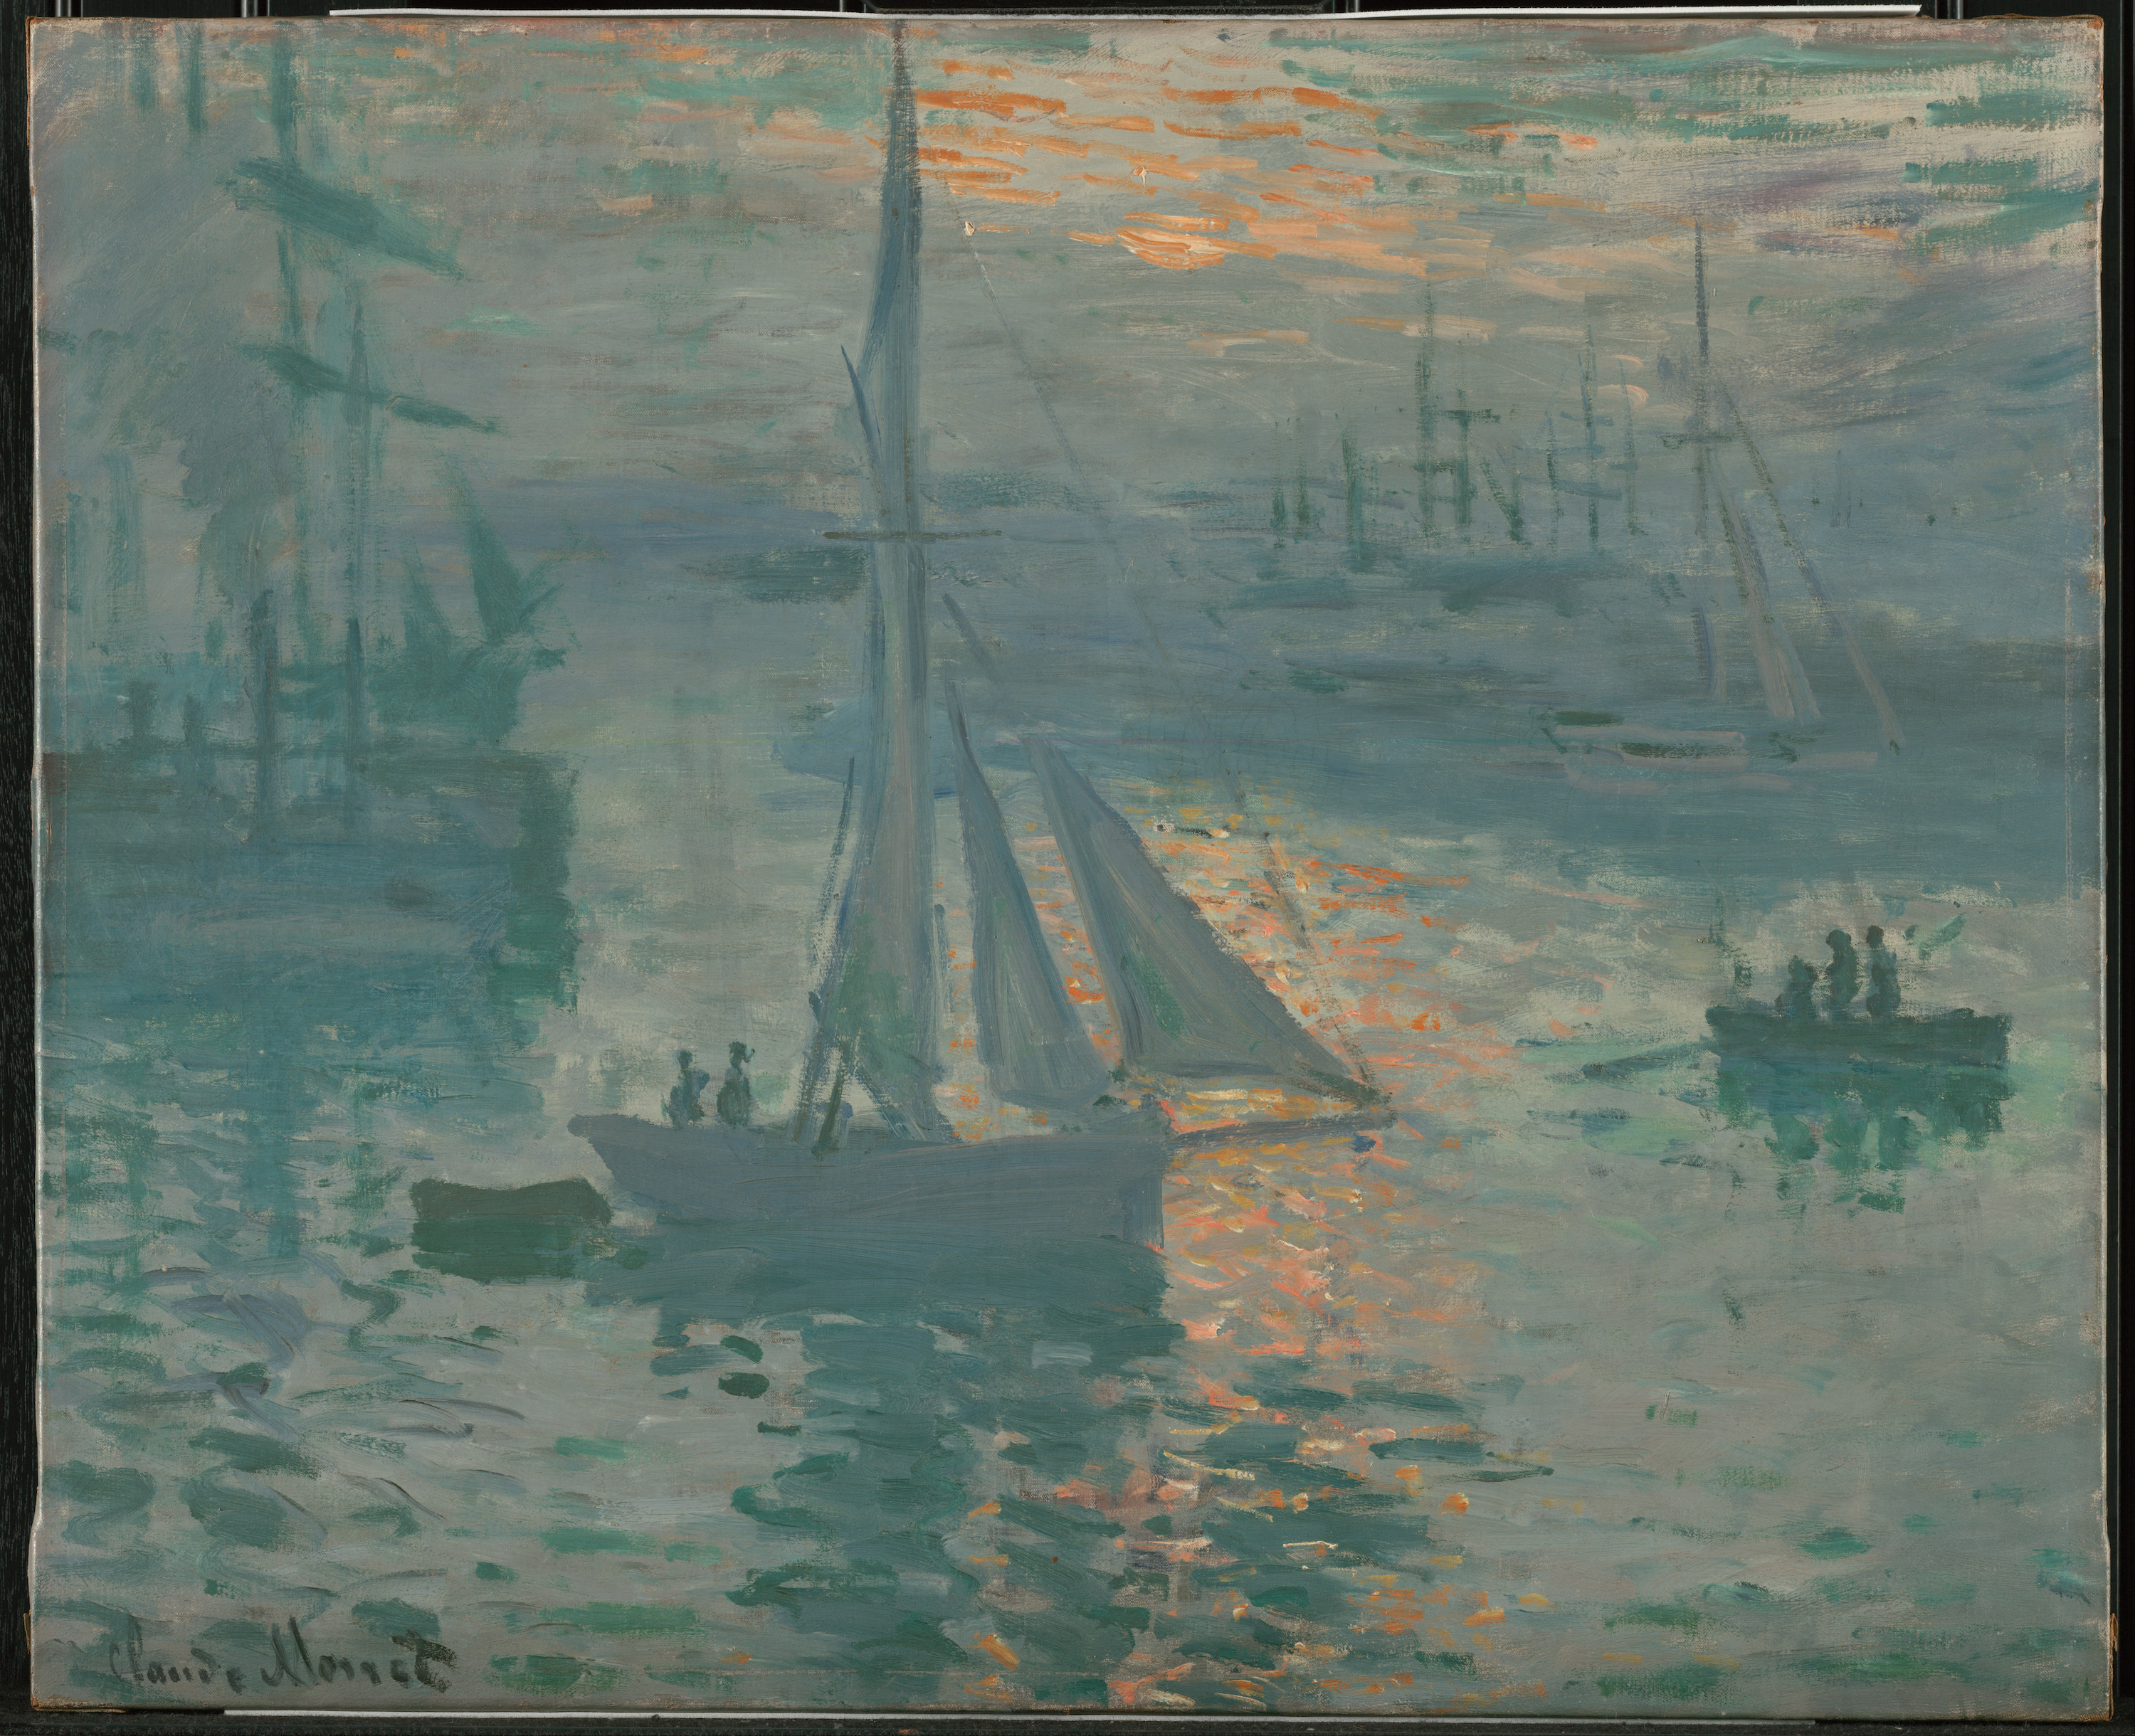 Wschód słońca (Marina) by Claude Monet - marzec lub kwiecień 1873 - 61 x 50,2 cm 